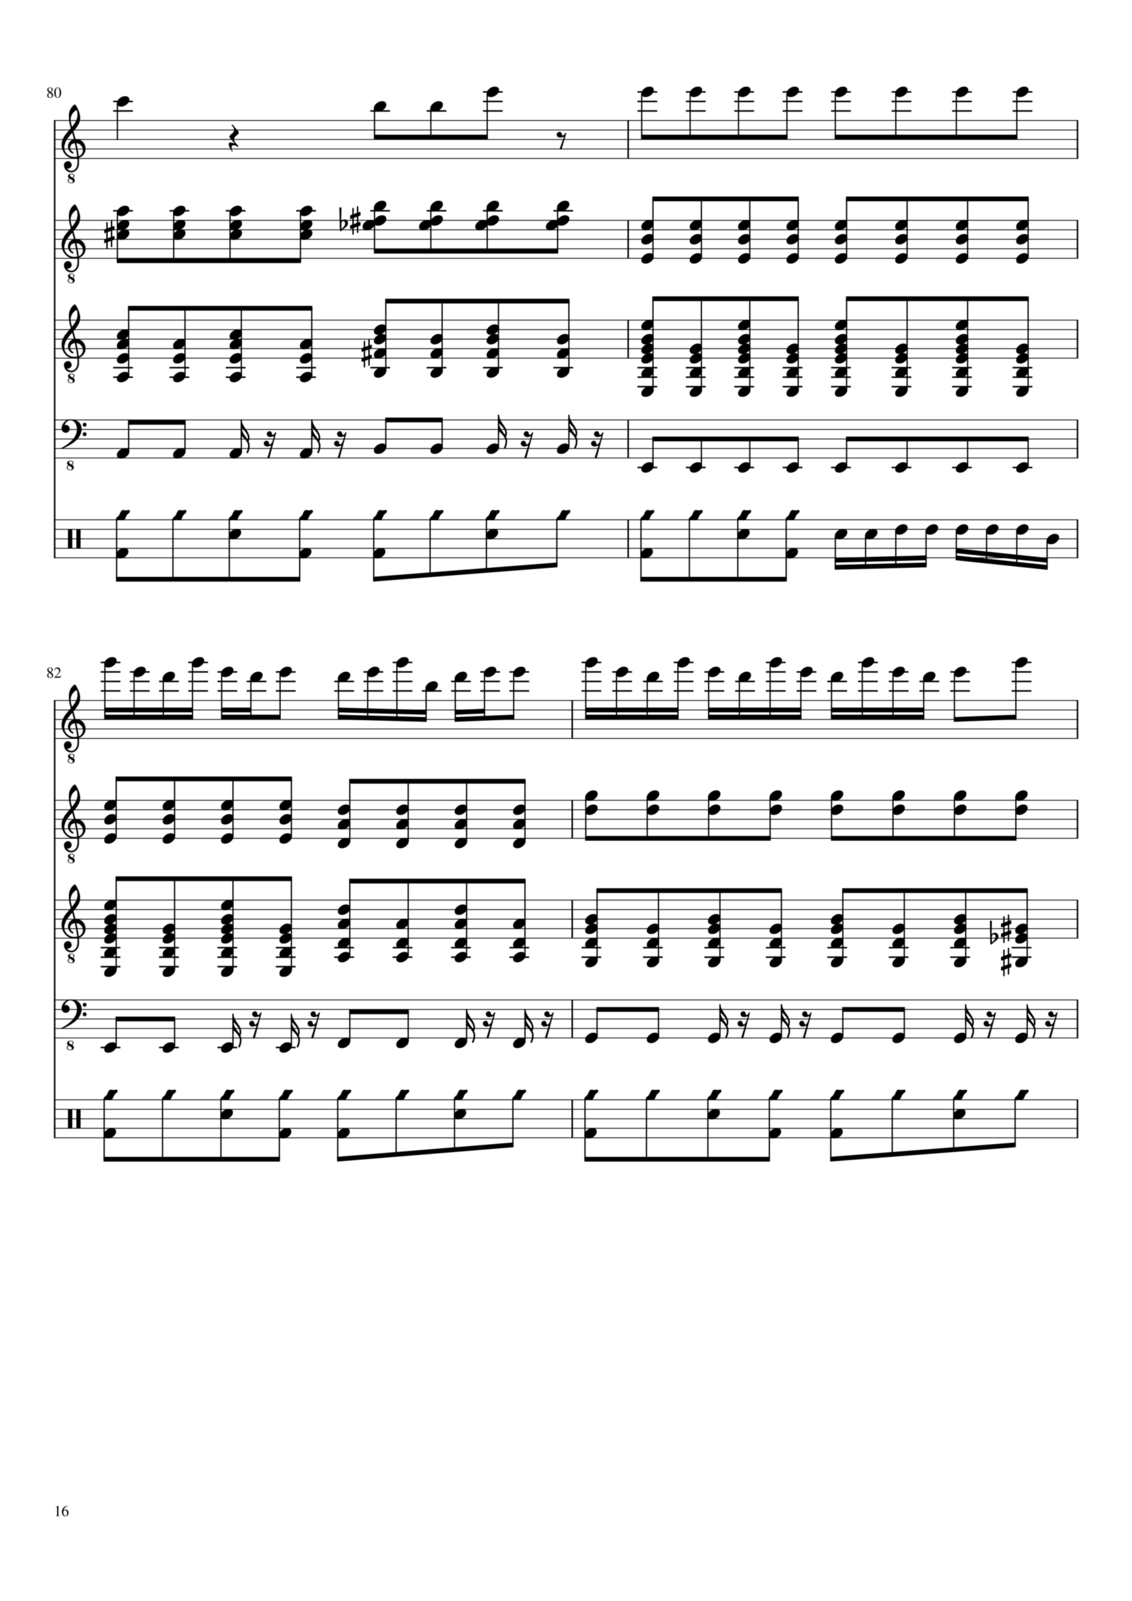 Vechnaya molodost slide, Image 16